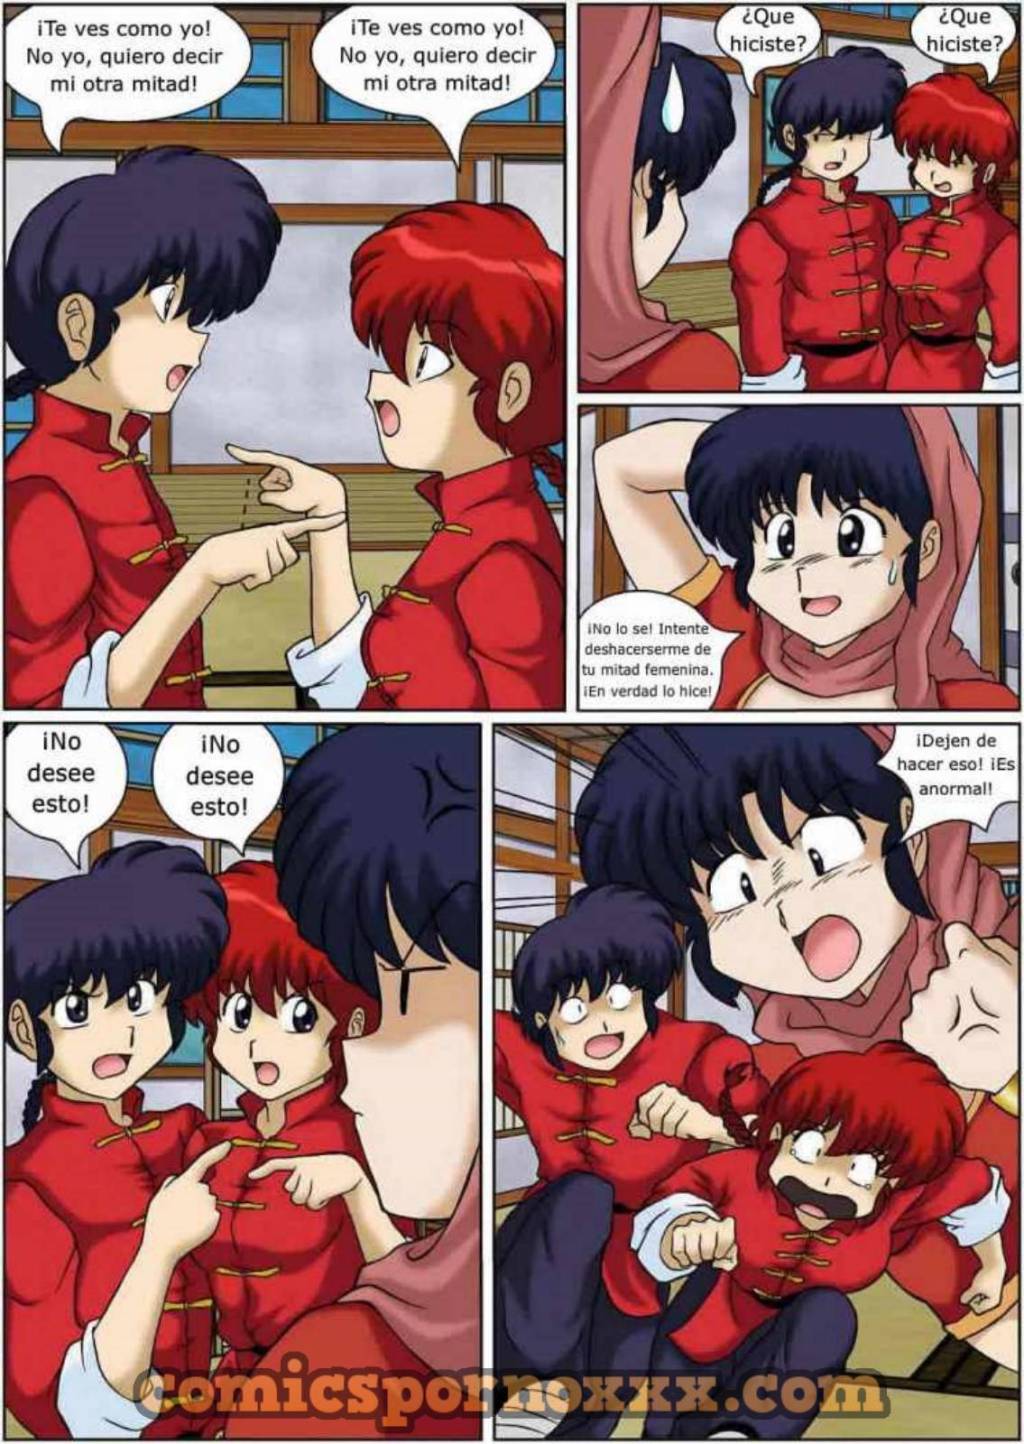 I Dream of Akane - 22 - Comics Porno - Hentai Manga - Cartoon XXX